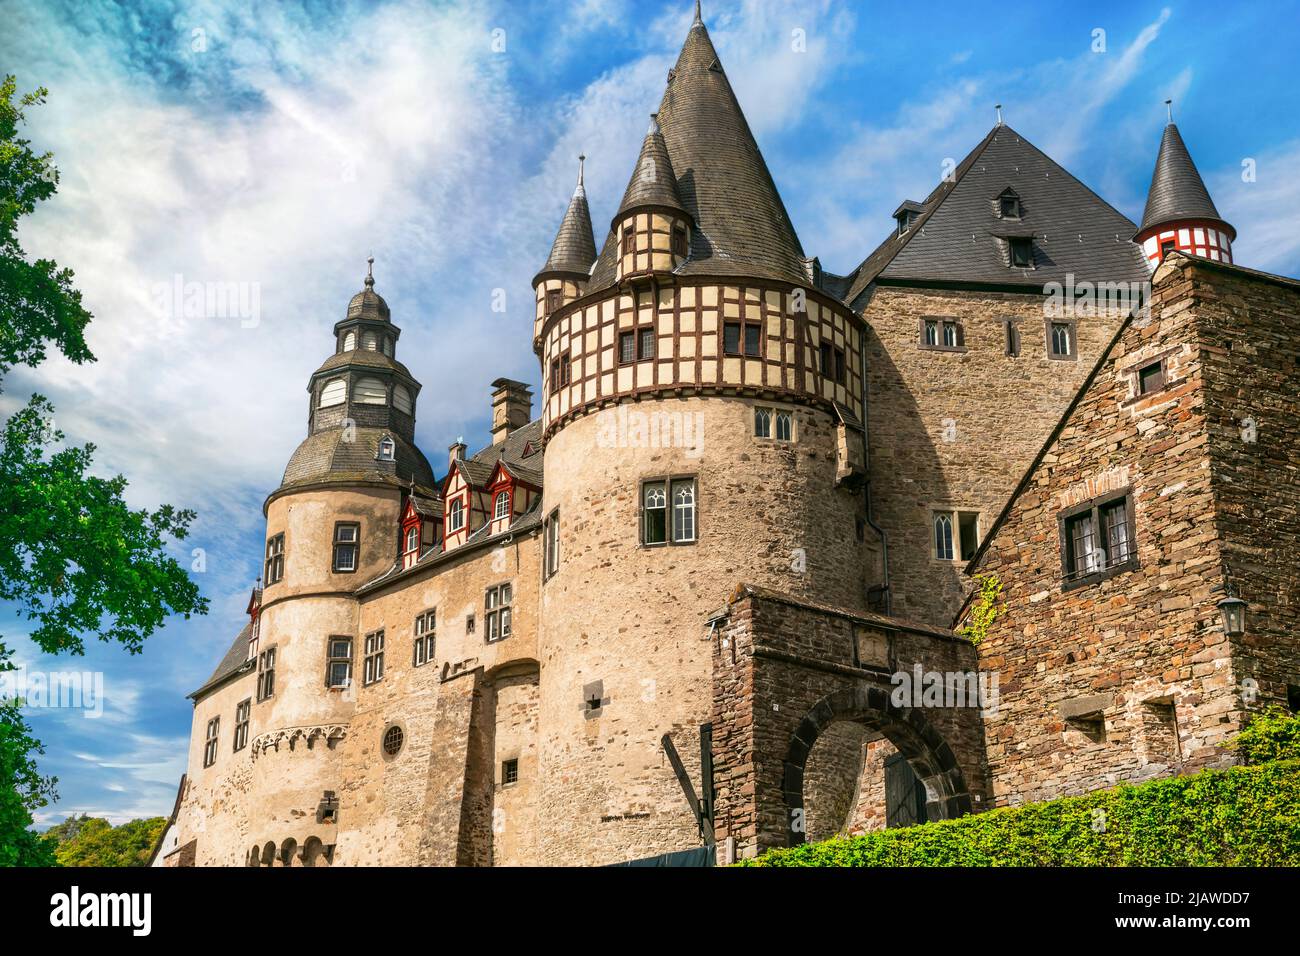 El Castillo Burresheim es un castillo medieval al noroeste de Mayen, Rheinland-Pfalz, Alemania viajes y lugares de interés Foto de stock